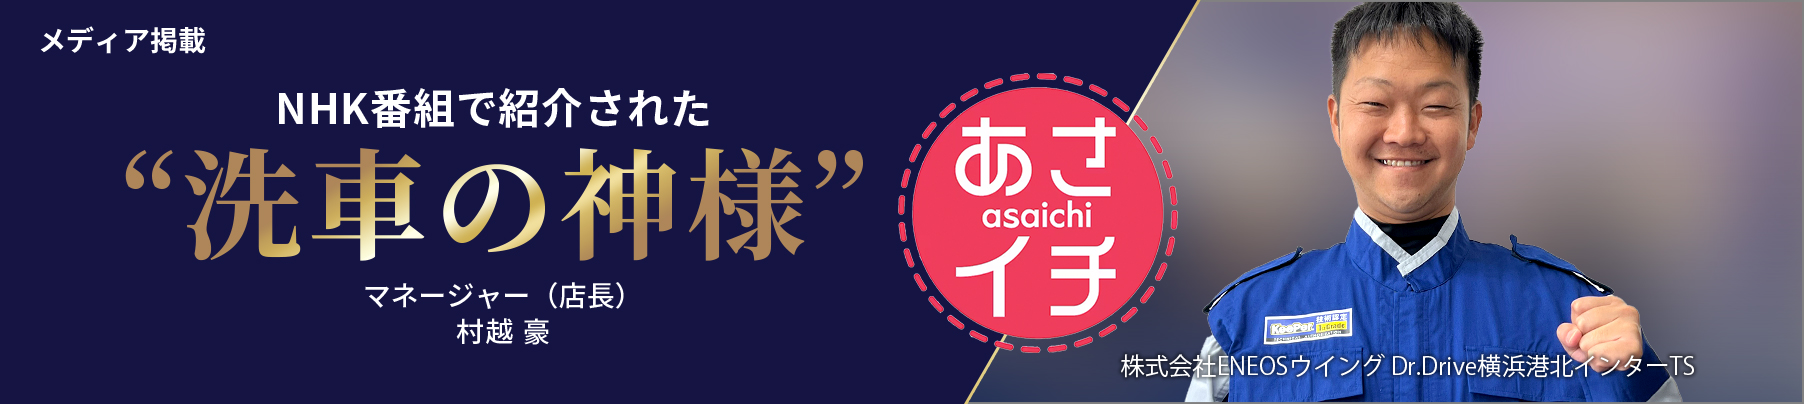 メディア掲載 NHK番組「あさイチ」で紹介された“洗車の神様” マネージャー（店長）村越 豪